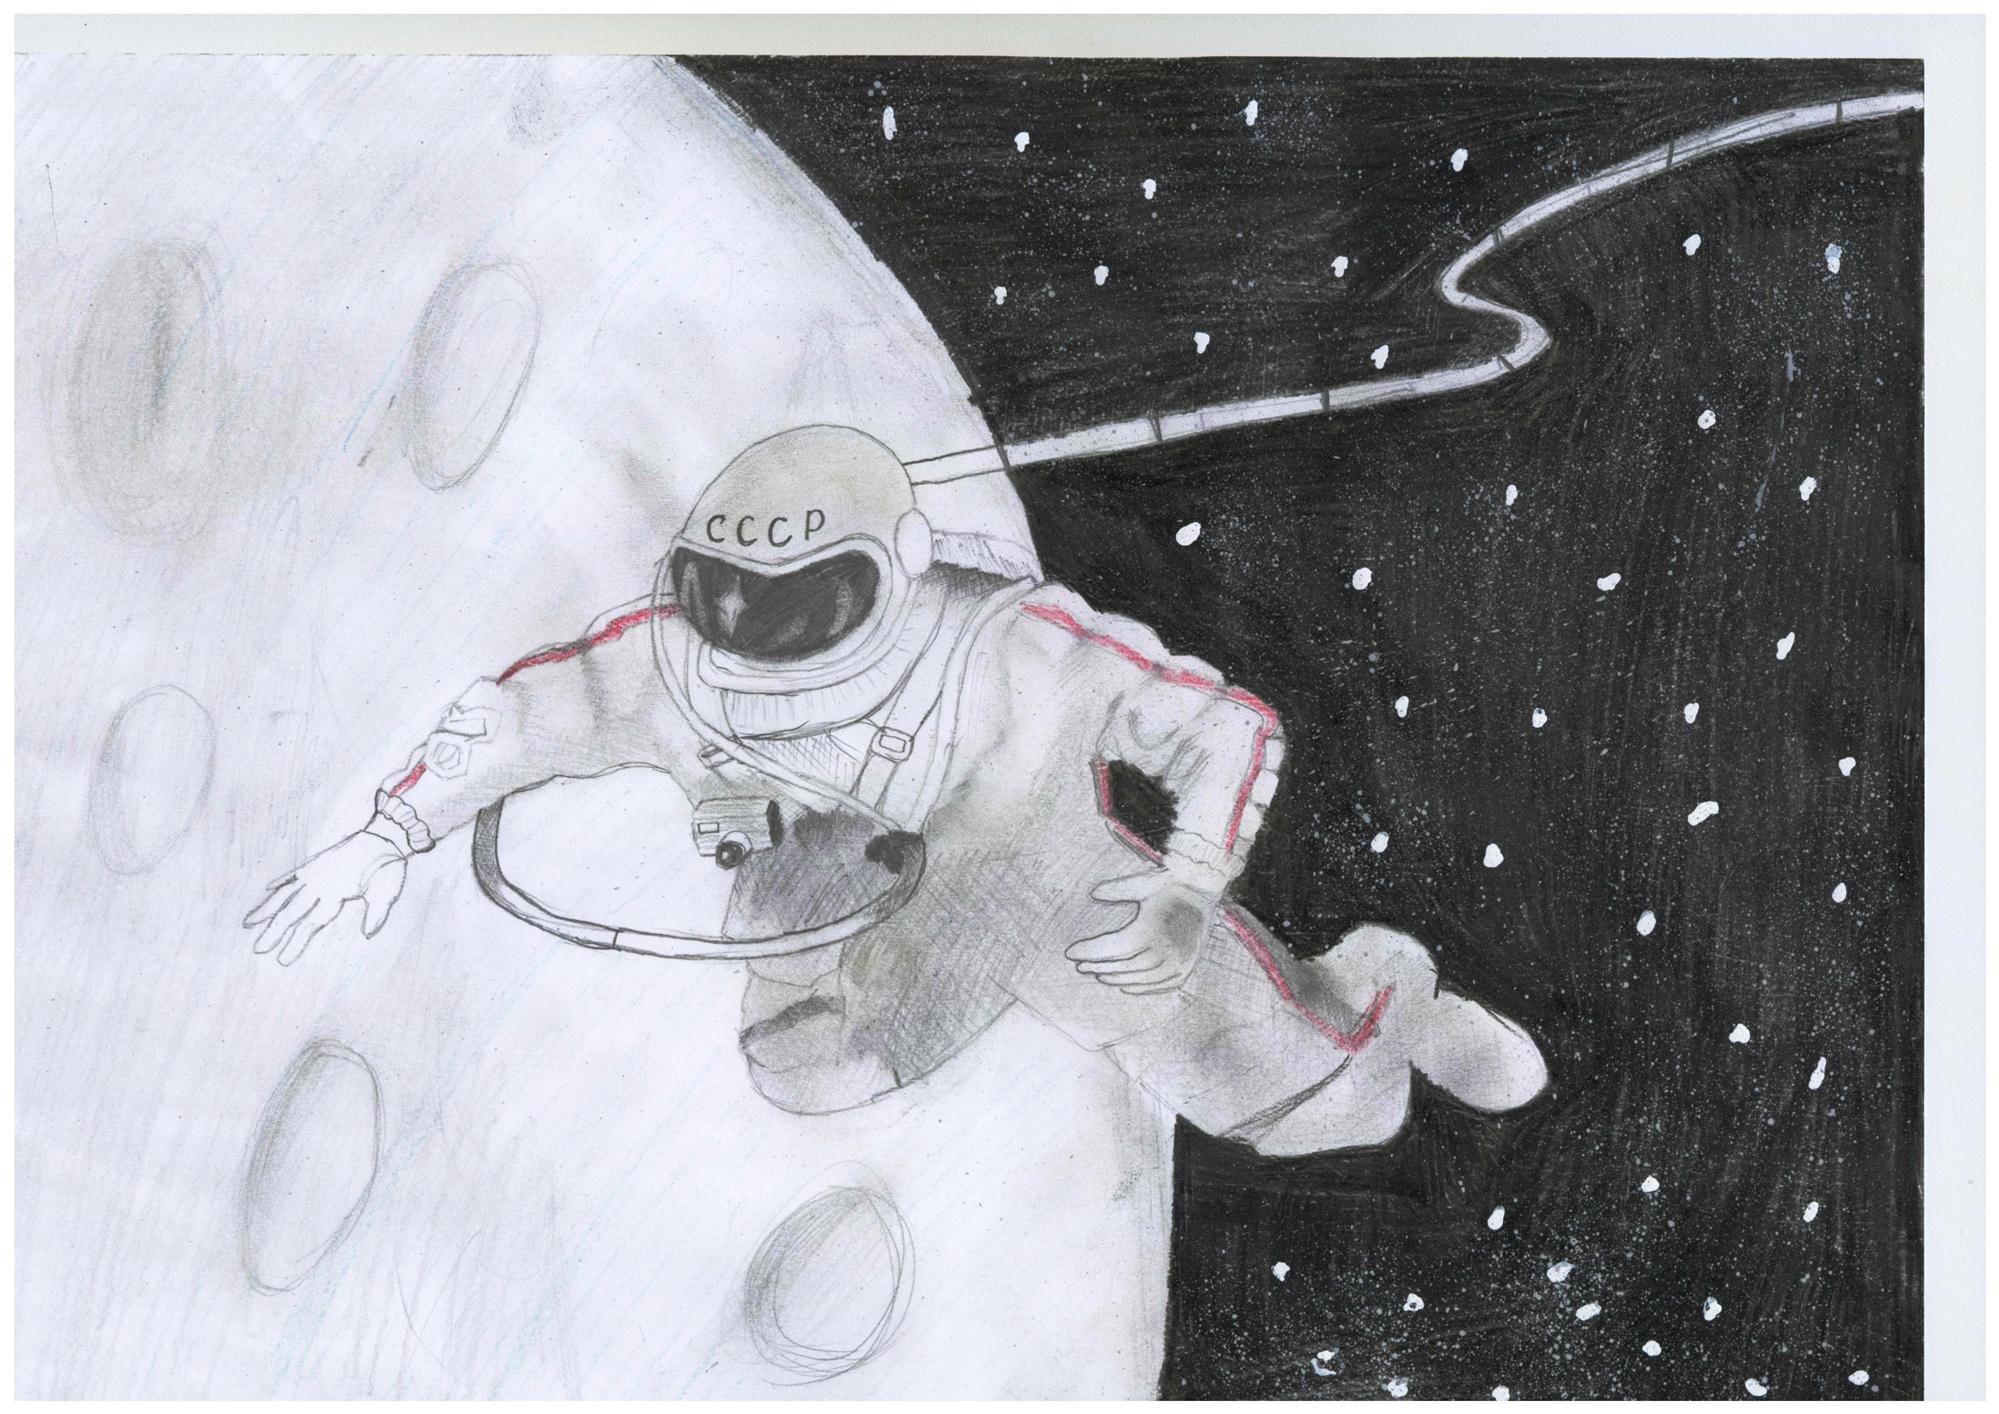 Рисунок космоса простым карандашом. Рисунок на космическую тему. Космос рисунок карандашом. Рисунок на тему космонавтики. Рисунок на тему космос карандашом.